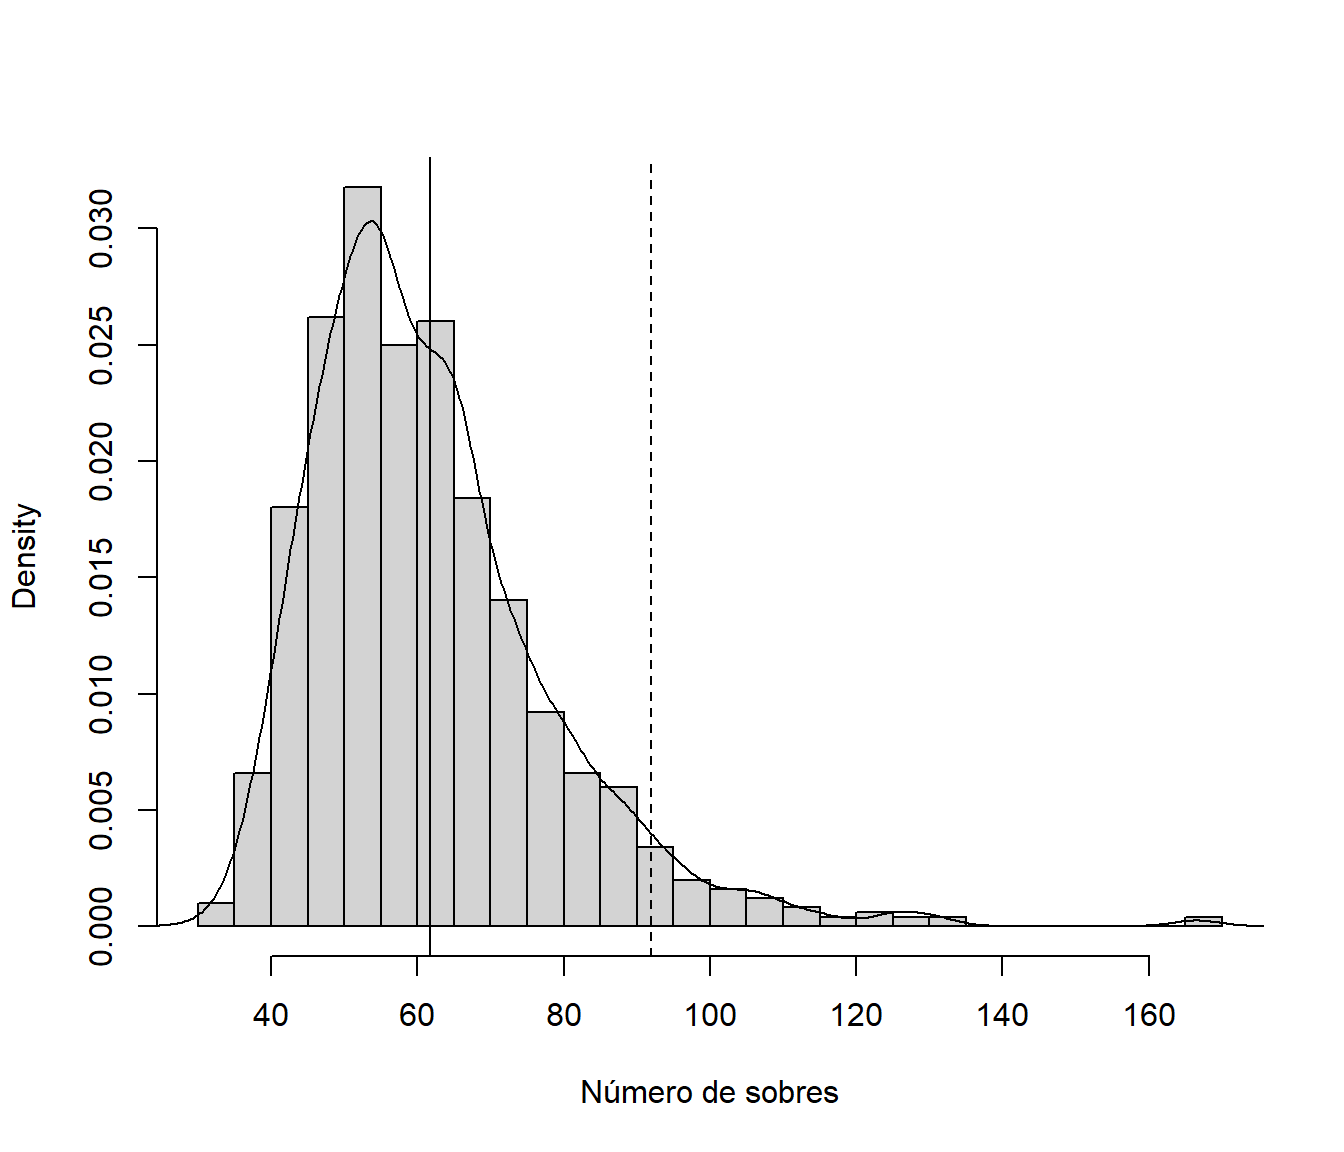 Aproximaciones por simulación de la distribución del número de sobres para completar la colección, de su valor esperado (línea vertical continua) y del cuantil 0.95 (línea vertical discontinua).